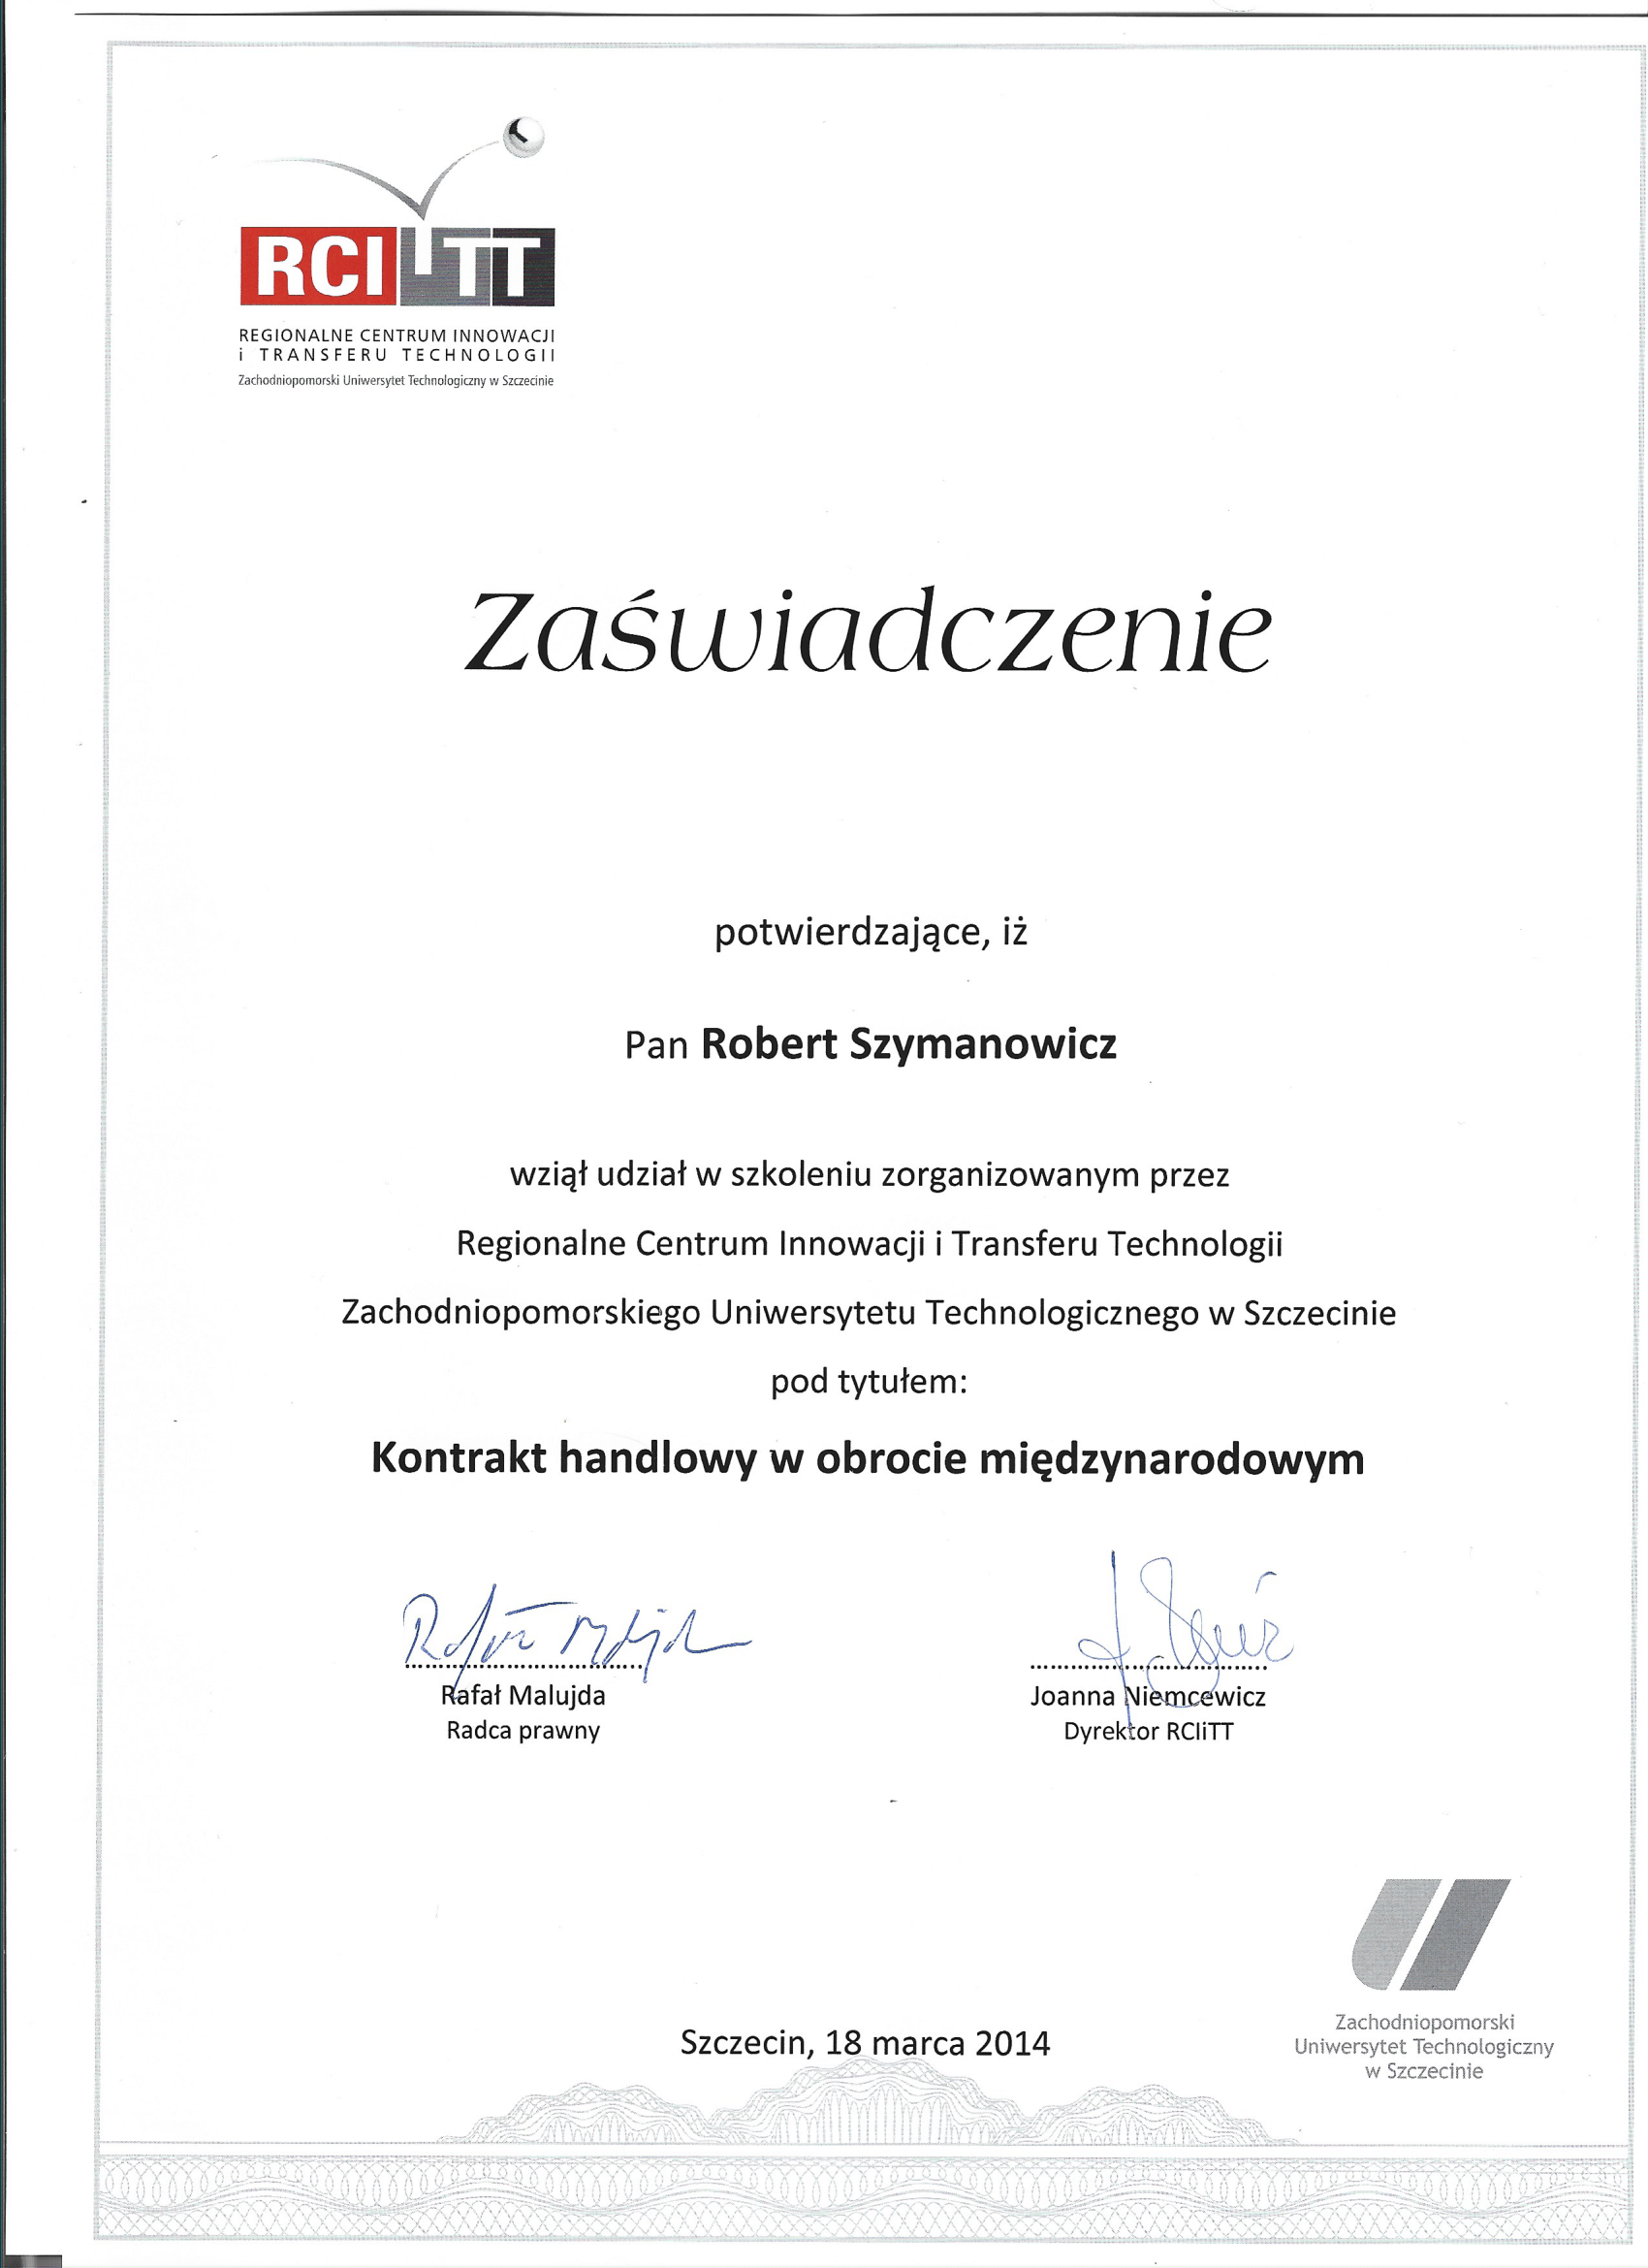 Certificat GM PLAST